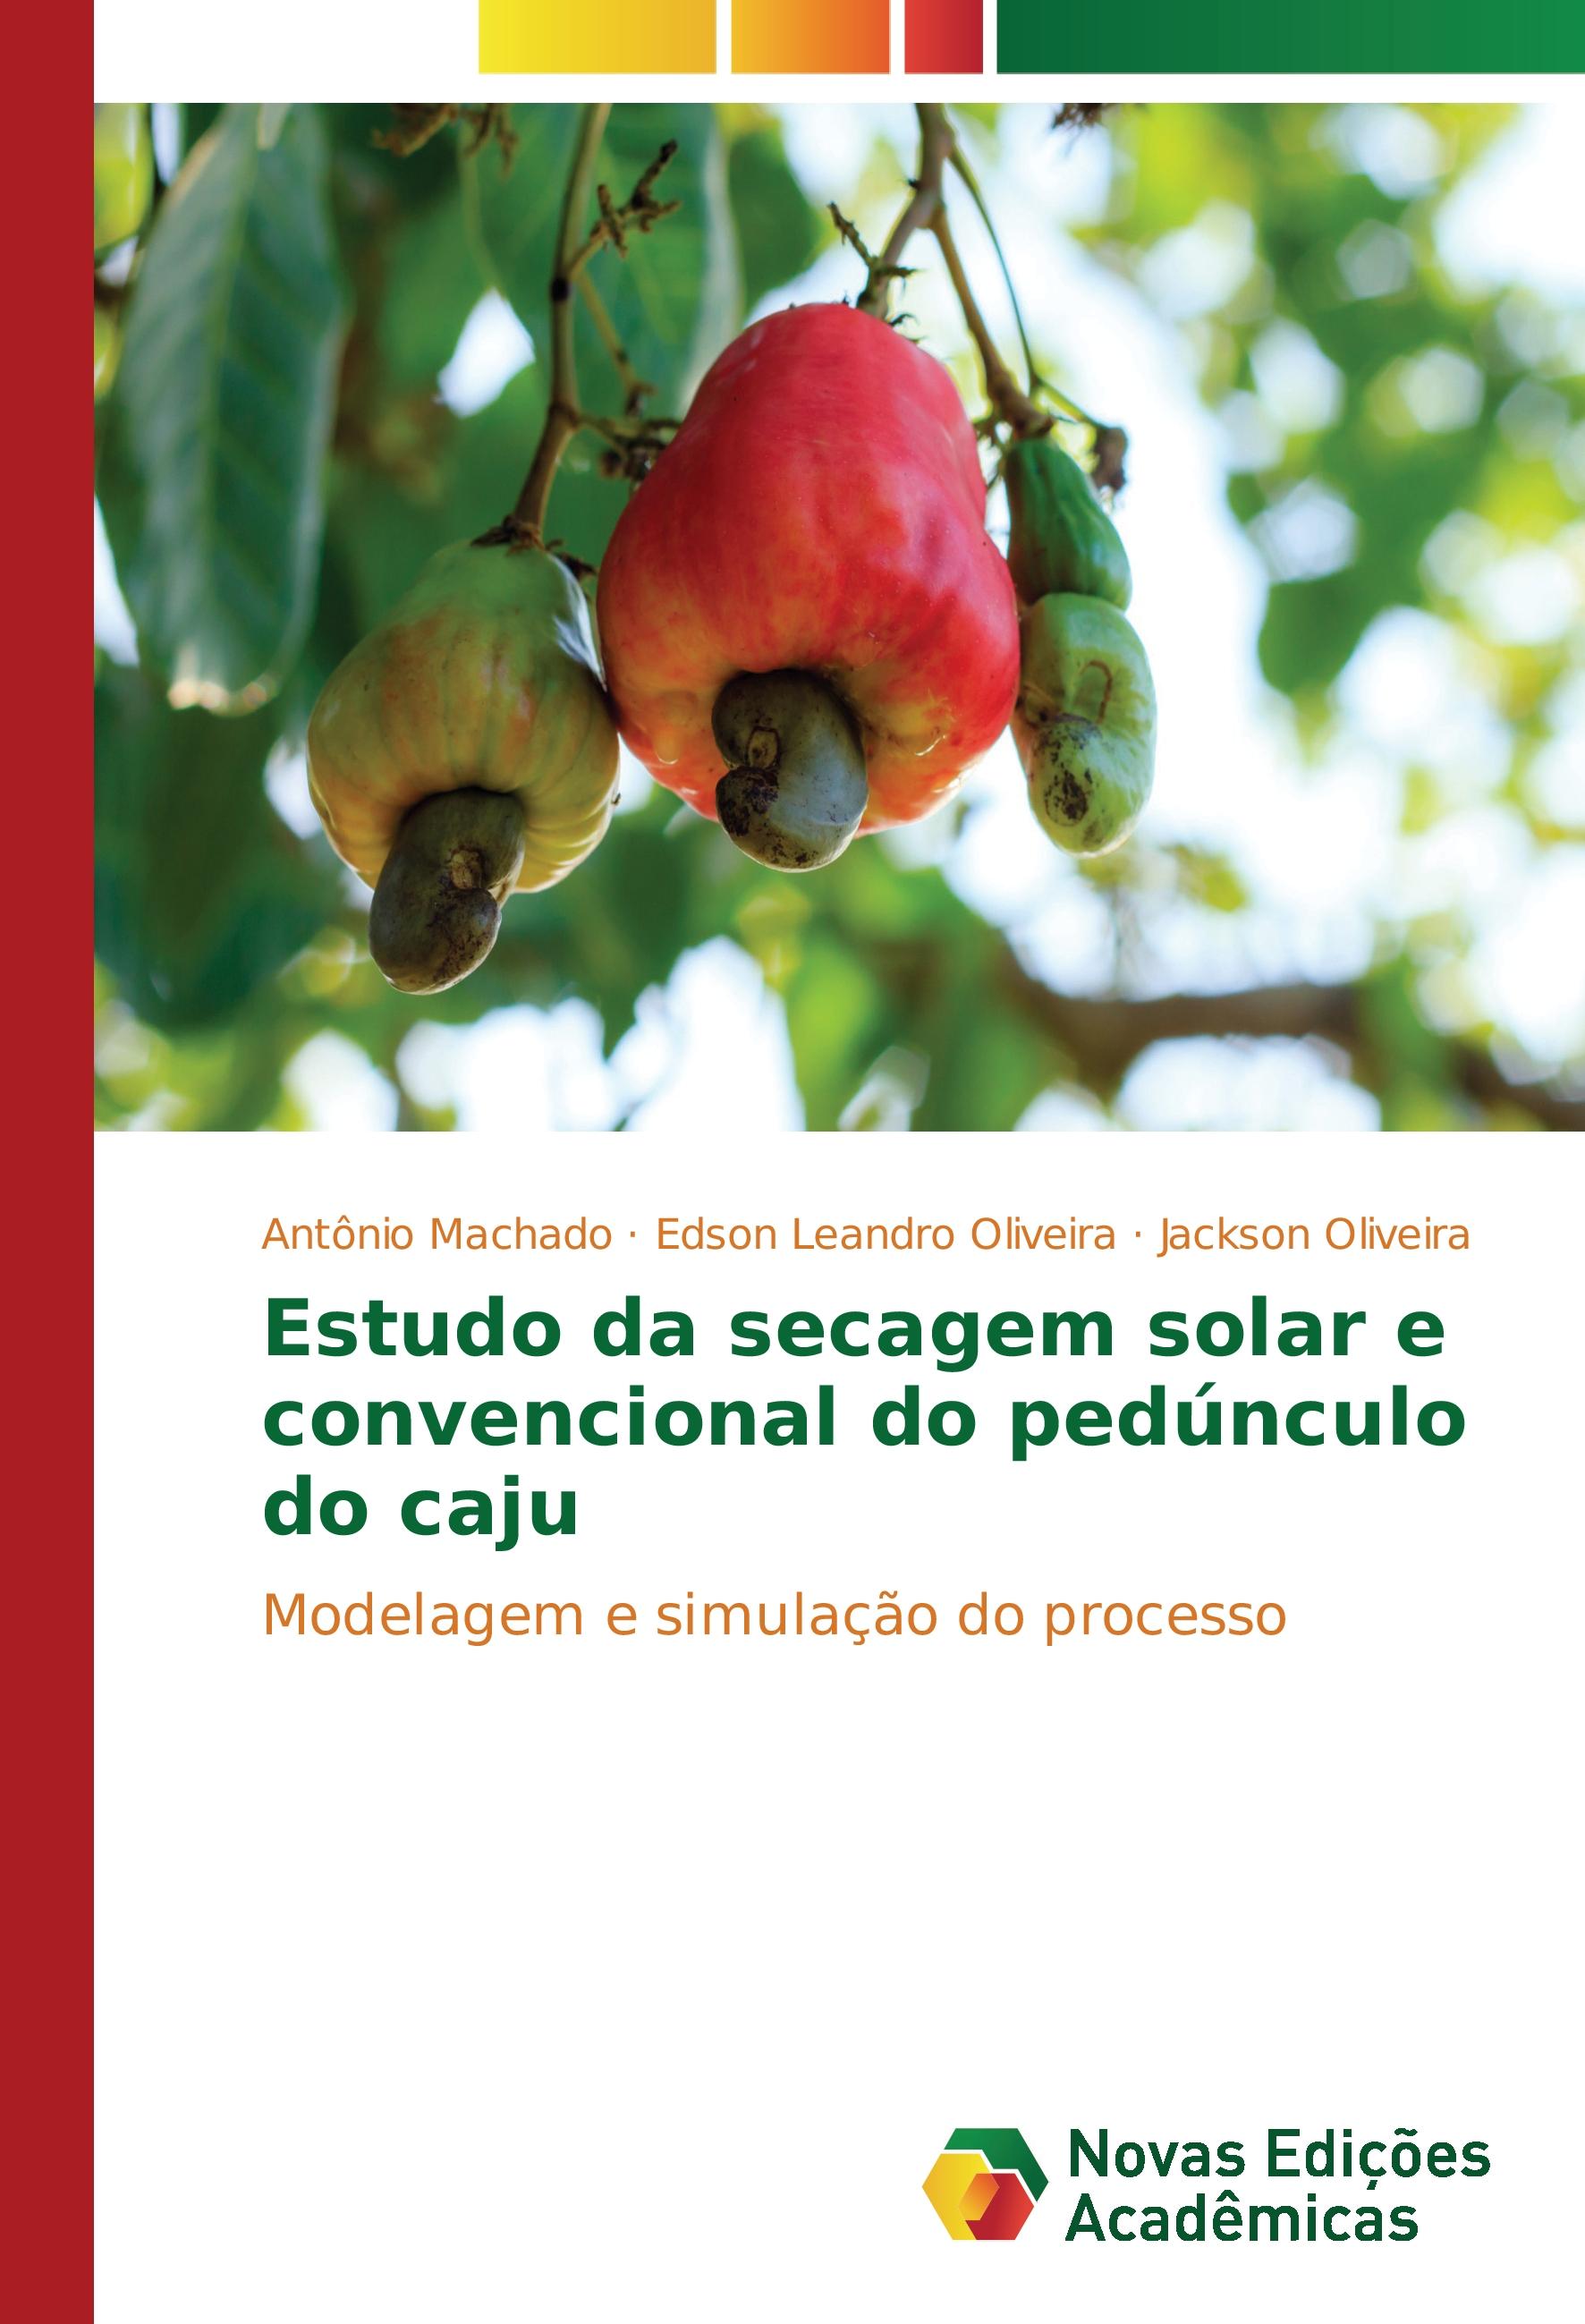 Estudo da secagem solar e convencional do pedúnculo do caju - Antônio Machado Edson Leandro Oliveira Jackson Oliveira